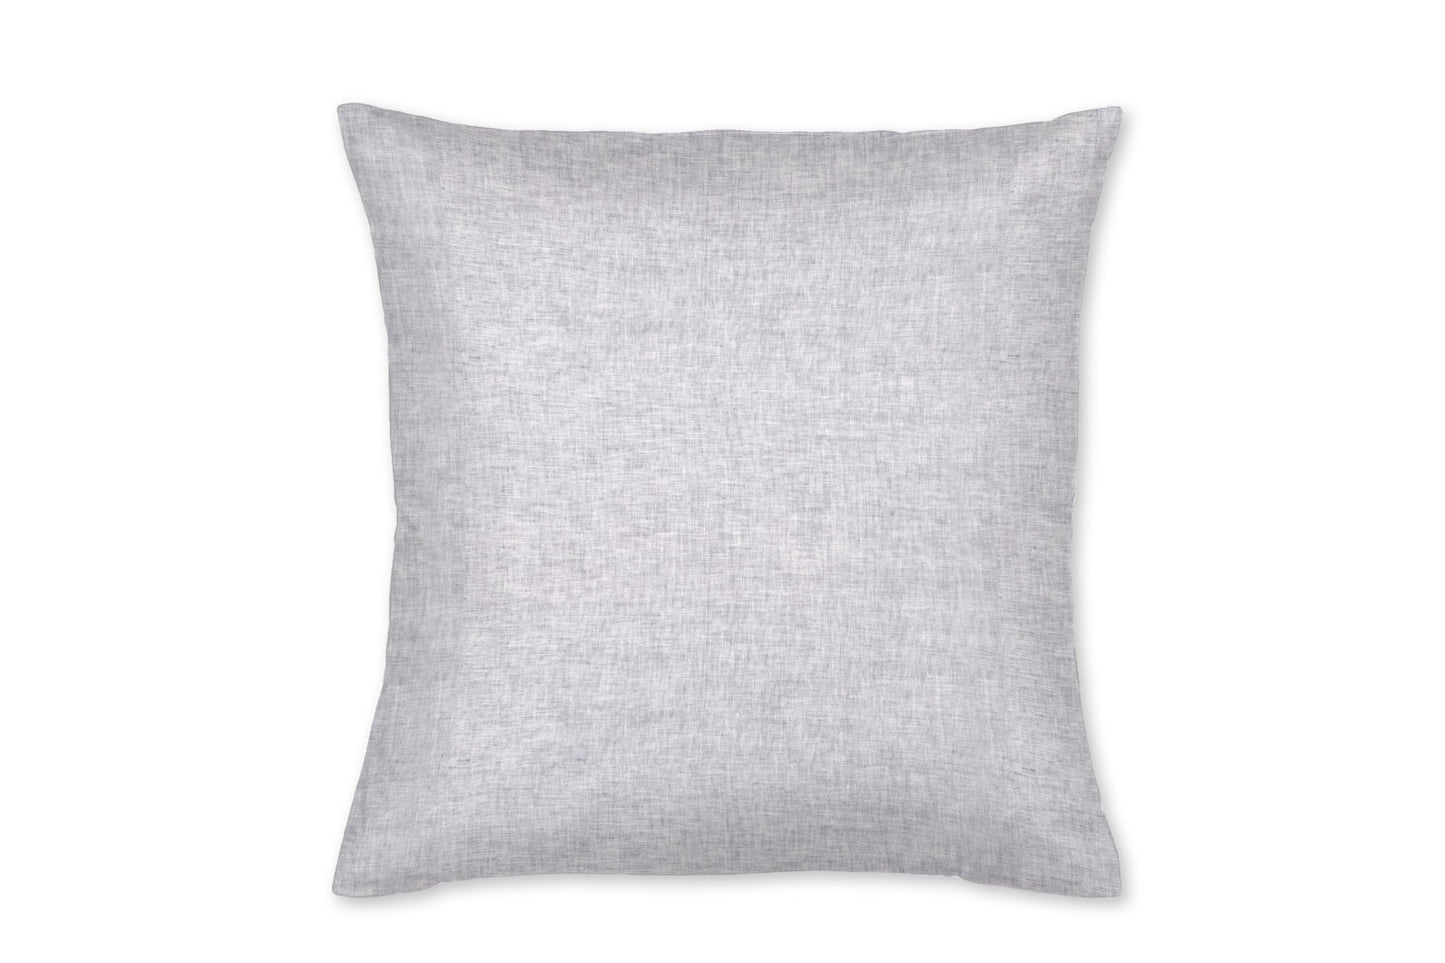 Savannah Gray Linen Throw Pillow - New Arrivals Inc